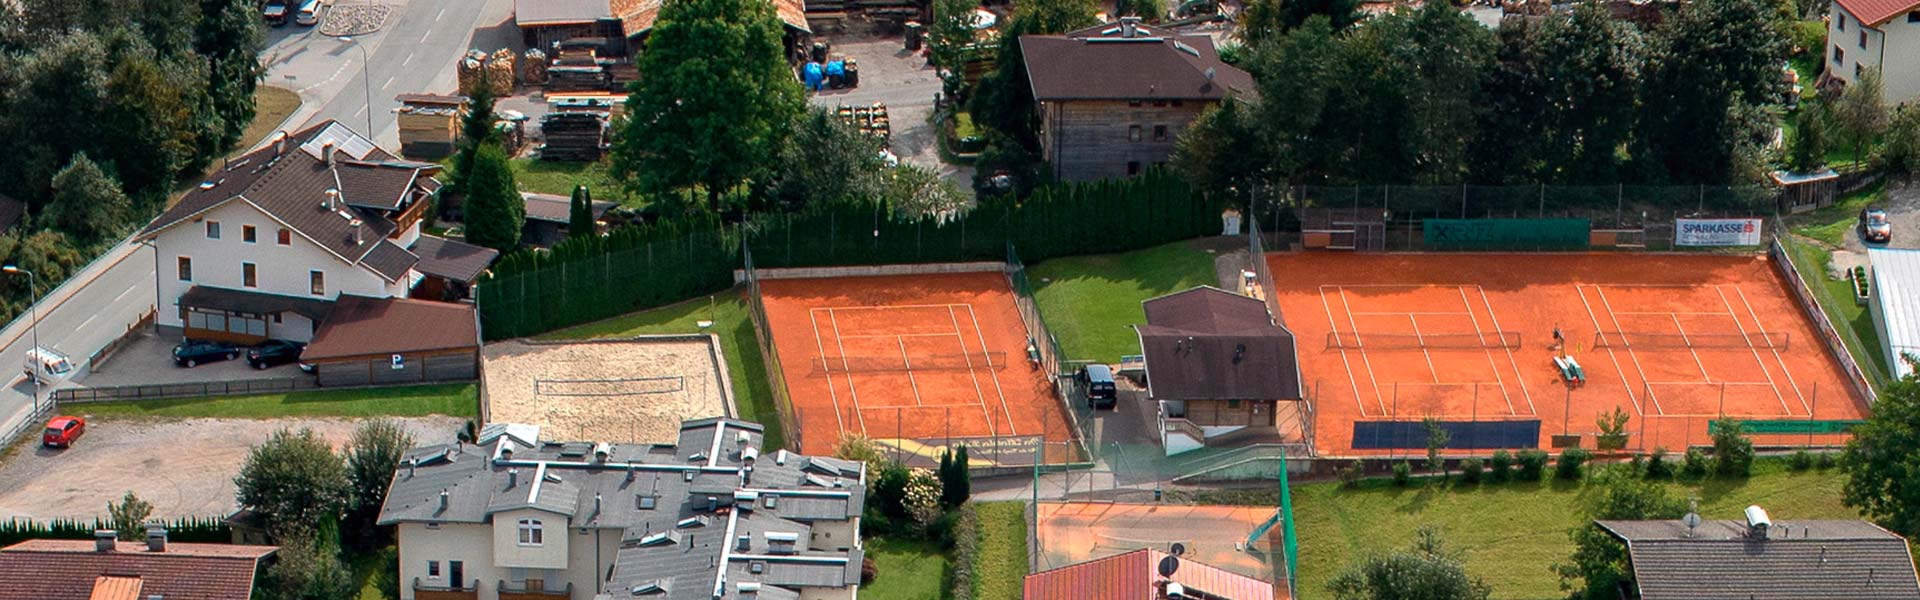 Tennisplatz Oben